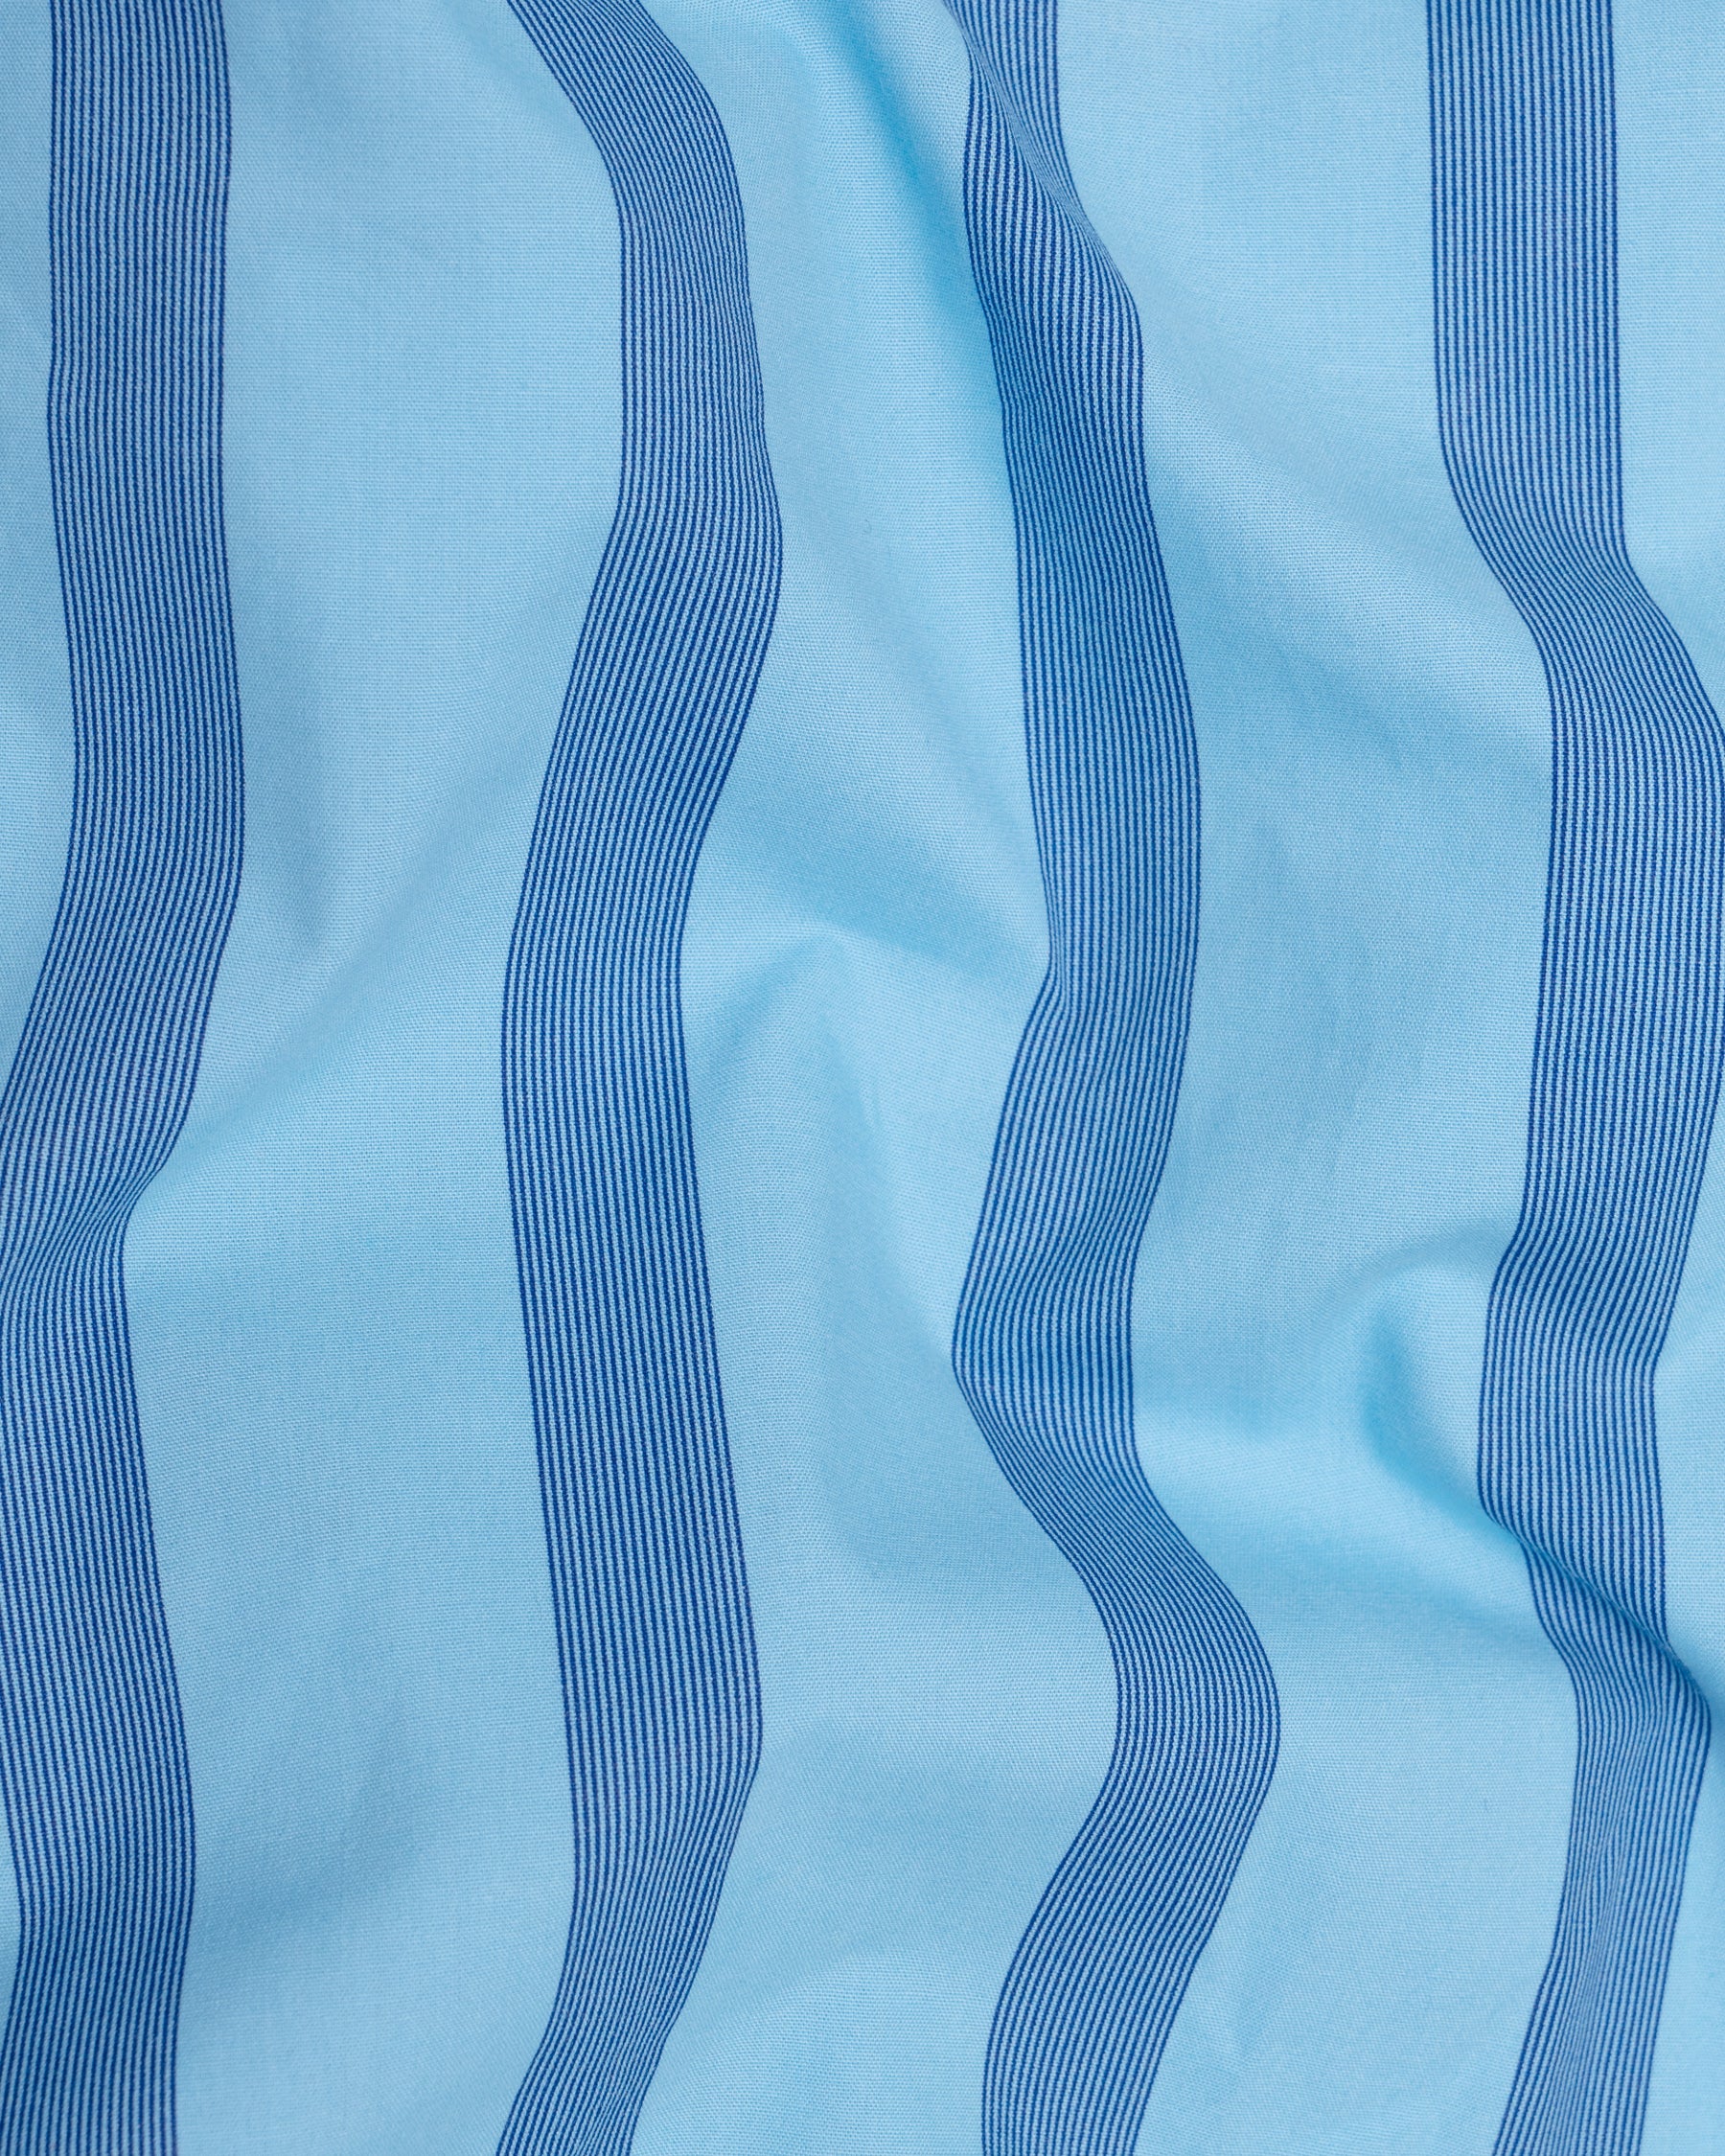 Cornflower Blue striped Premium cotton Shirt 5096-BLE-38, 5096-BLE-H-38, 5096-BLE-39, 5096-BLE-H-39, 5096-BLE-40, 5096-BLE-H-40, 5096-BLE-42, 5096-BLE-H-42, 5096-BLE-44, 5096-BLE-H-44, 5096-BLE-46, 5096-BLE-H-46, 5096-BLE-48, 5096-BLE-H-48, 5096-BLE-50, 5096-BLE-H-50, 5096-BLE-52, 5096-BLE-H-52